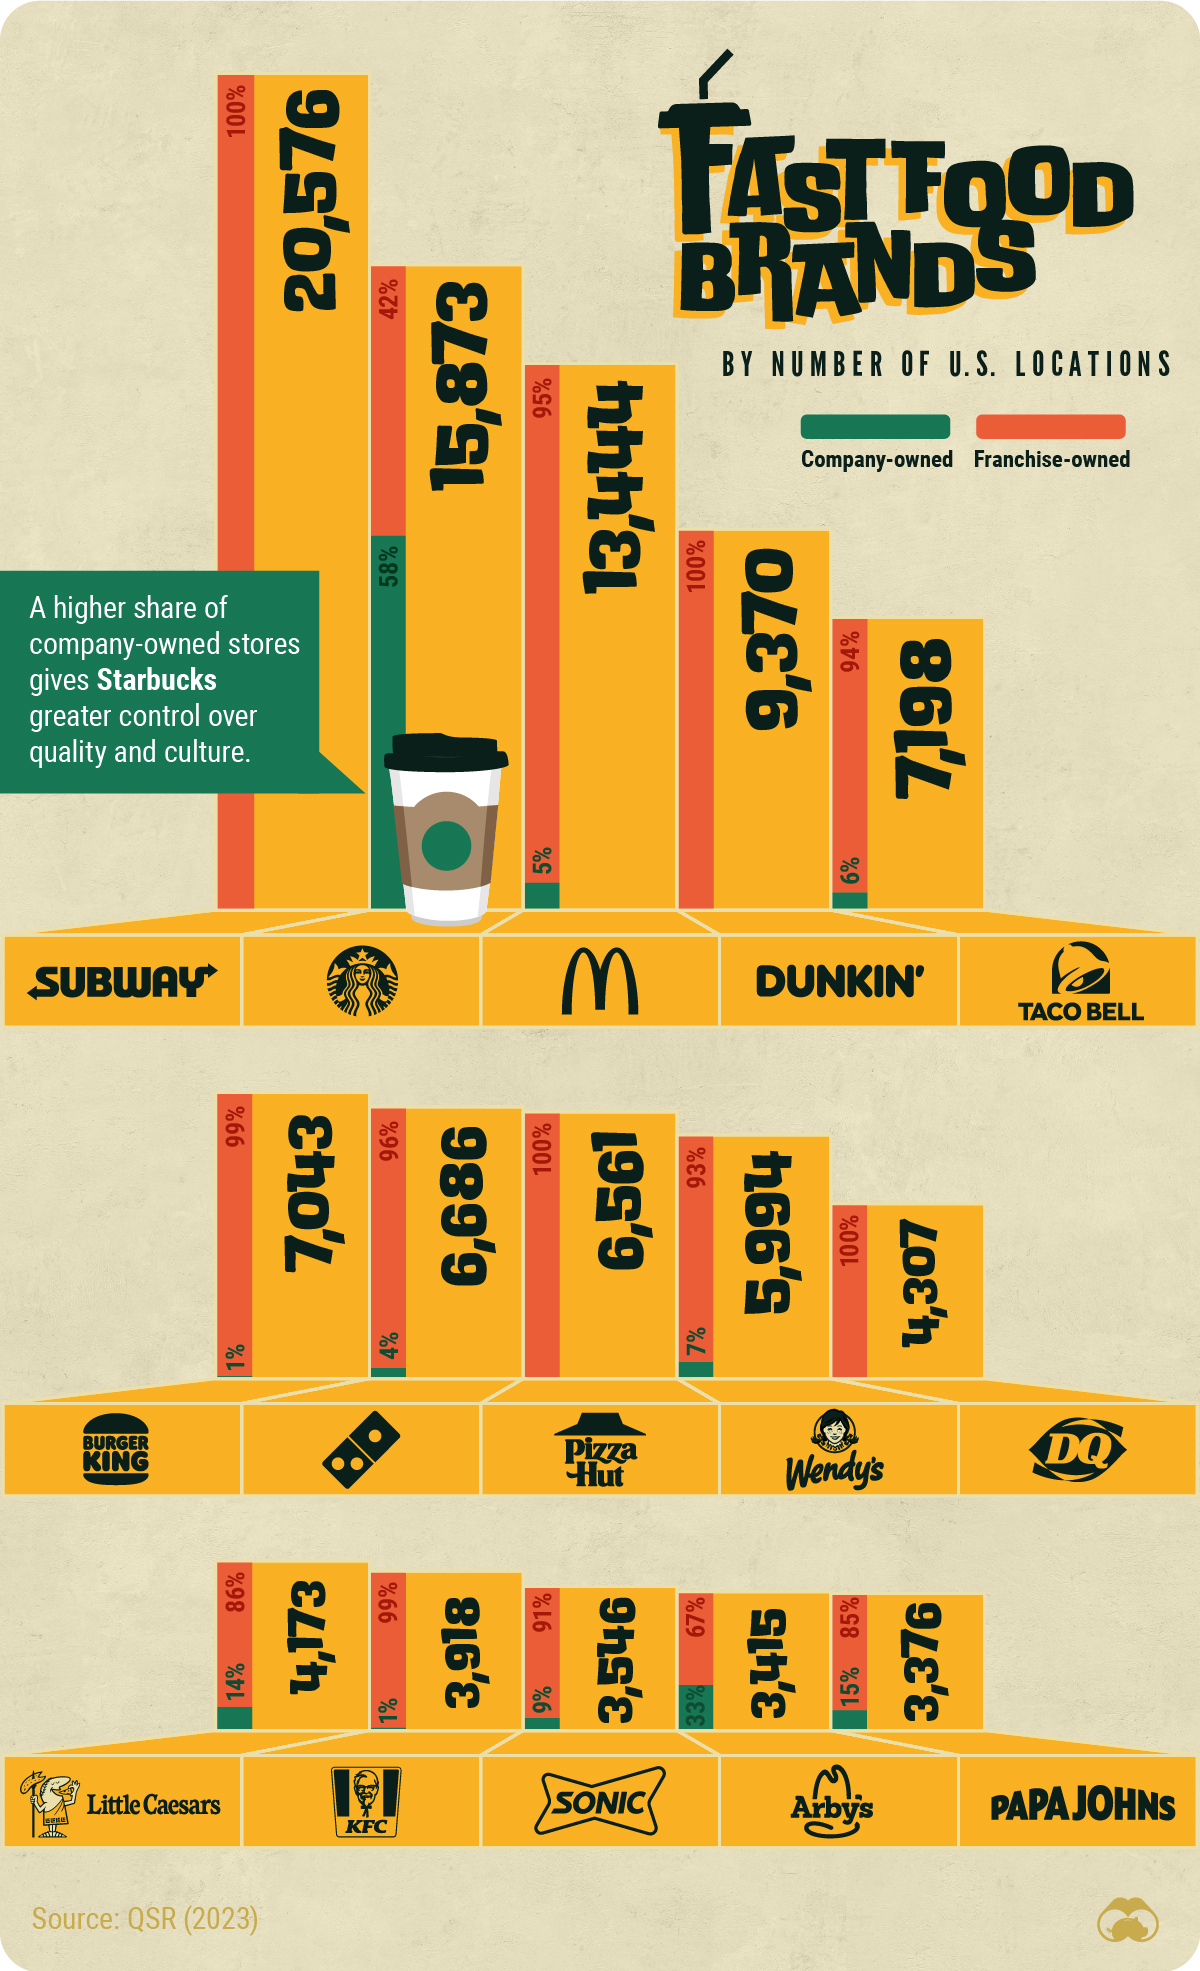 条形图显示了全国拥有最多门店的顶级快餐品牌。